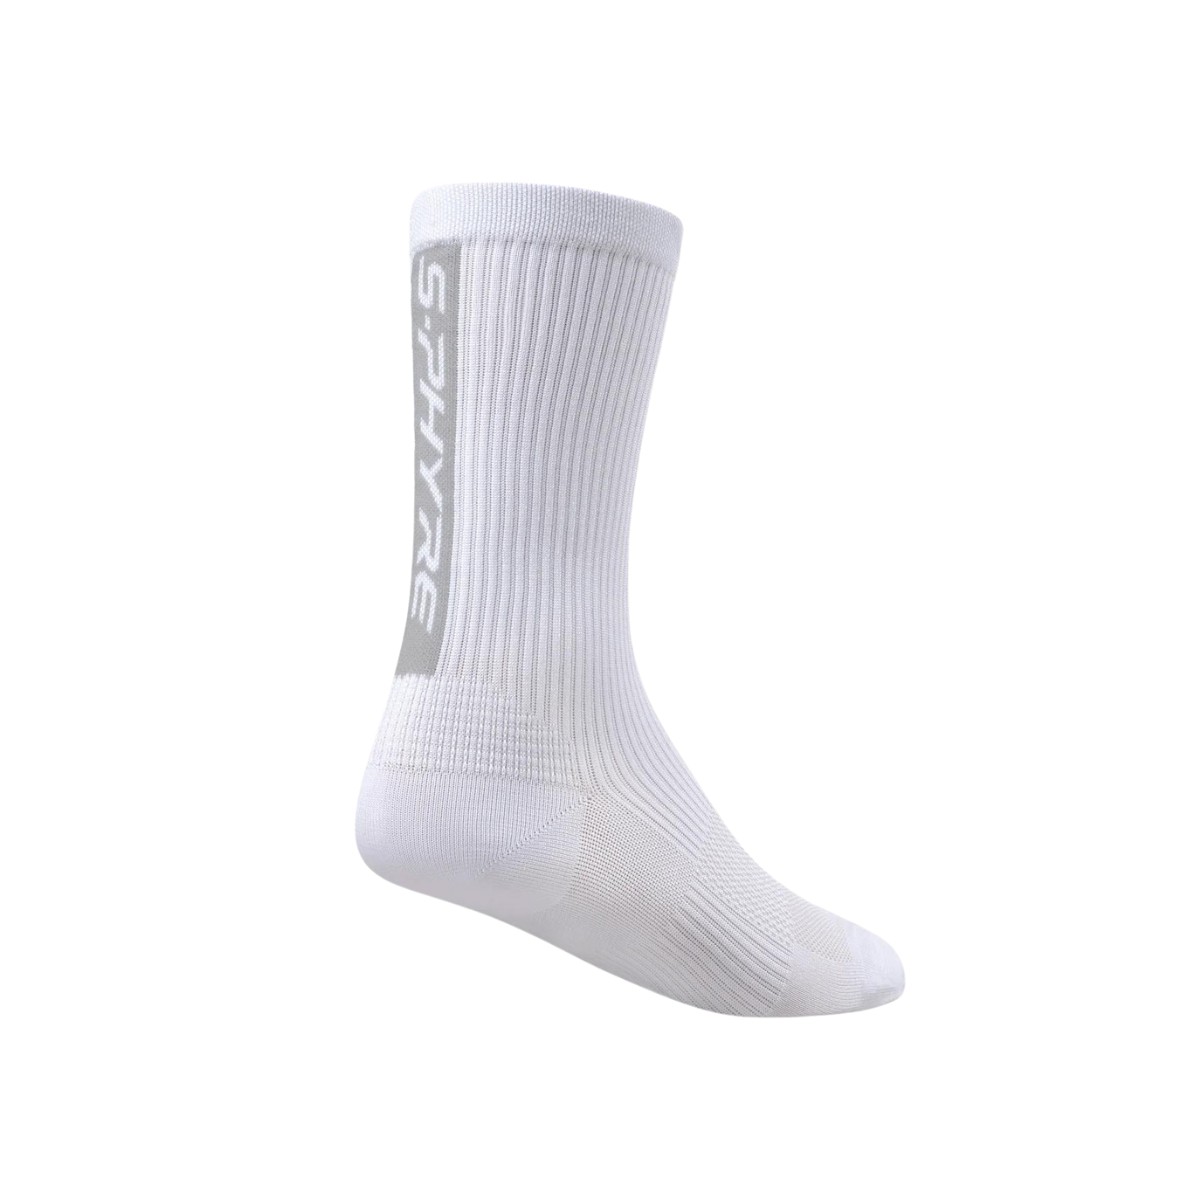 mal die günstig Kaufen-Shimano S-Phyre Flash Weiße Socken, Größe L/XL. Shimano S-Phyre Flash Weiße Socken, Größe L/XL <![CDATA[Shimano S-Phyre Flash Socken Entdecken Sie maximale Leistung mit den Shimano S-Phyre Flash Socken, die speziell für Hoch